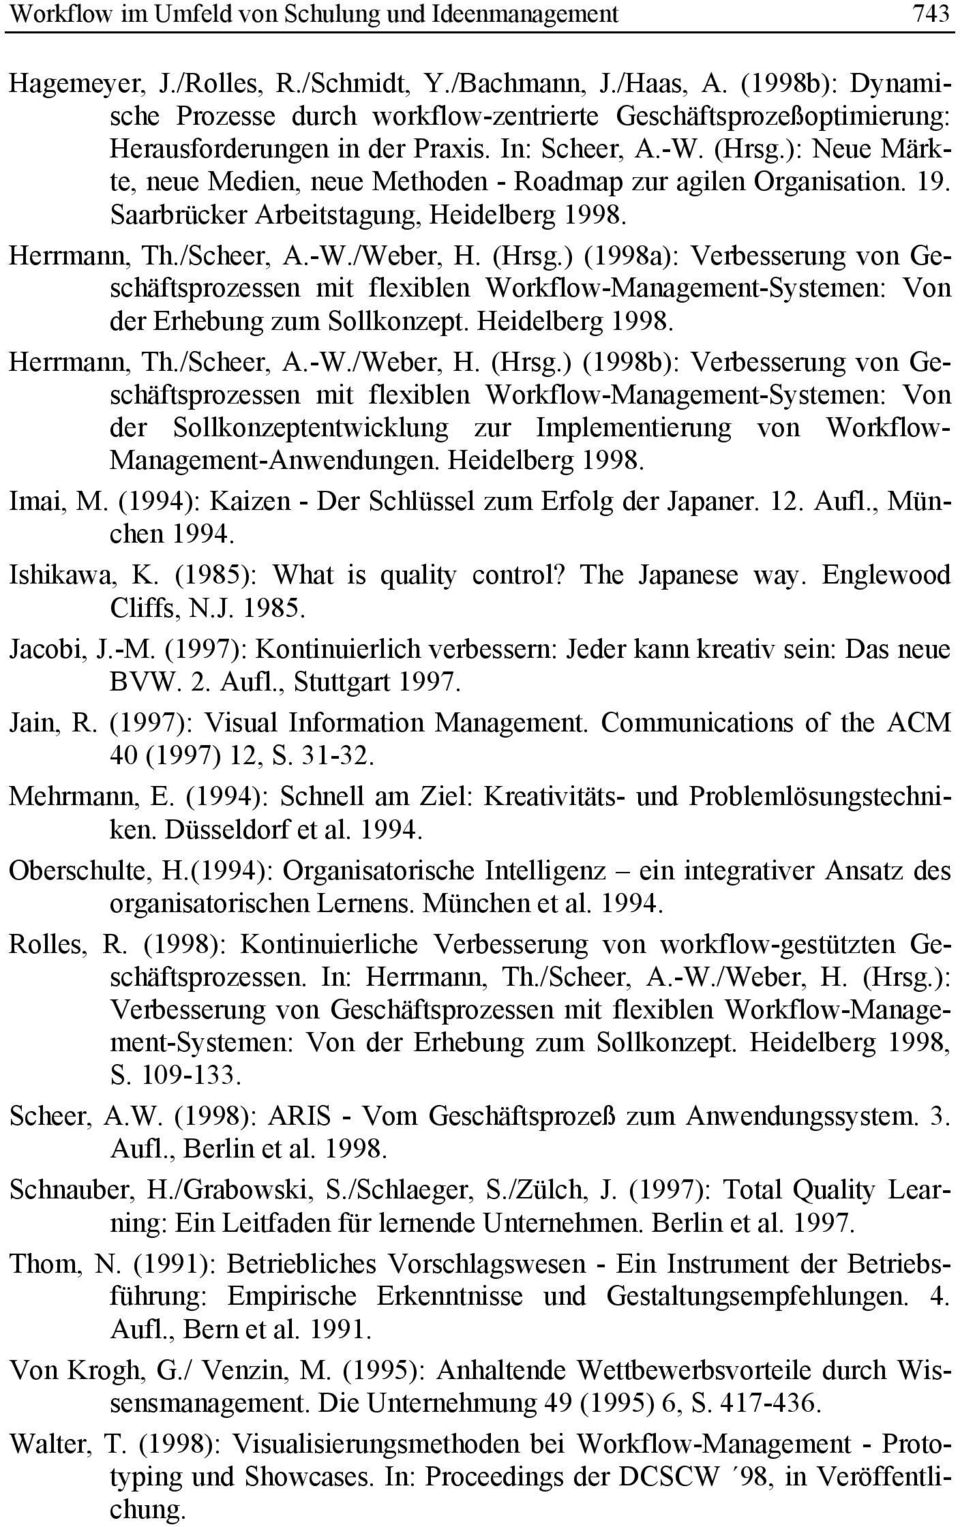 ): Neue Märkte, neue Medien, neue Methoden - Roadmap zur agilen Organisation. 19. Saarbrücker Arbeitstagung, Heidelberg 1998. Herrmann, Th./Scheer, A.-W./Weber, H. (Hrsg.